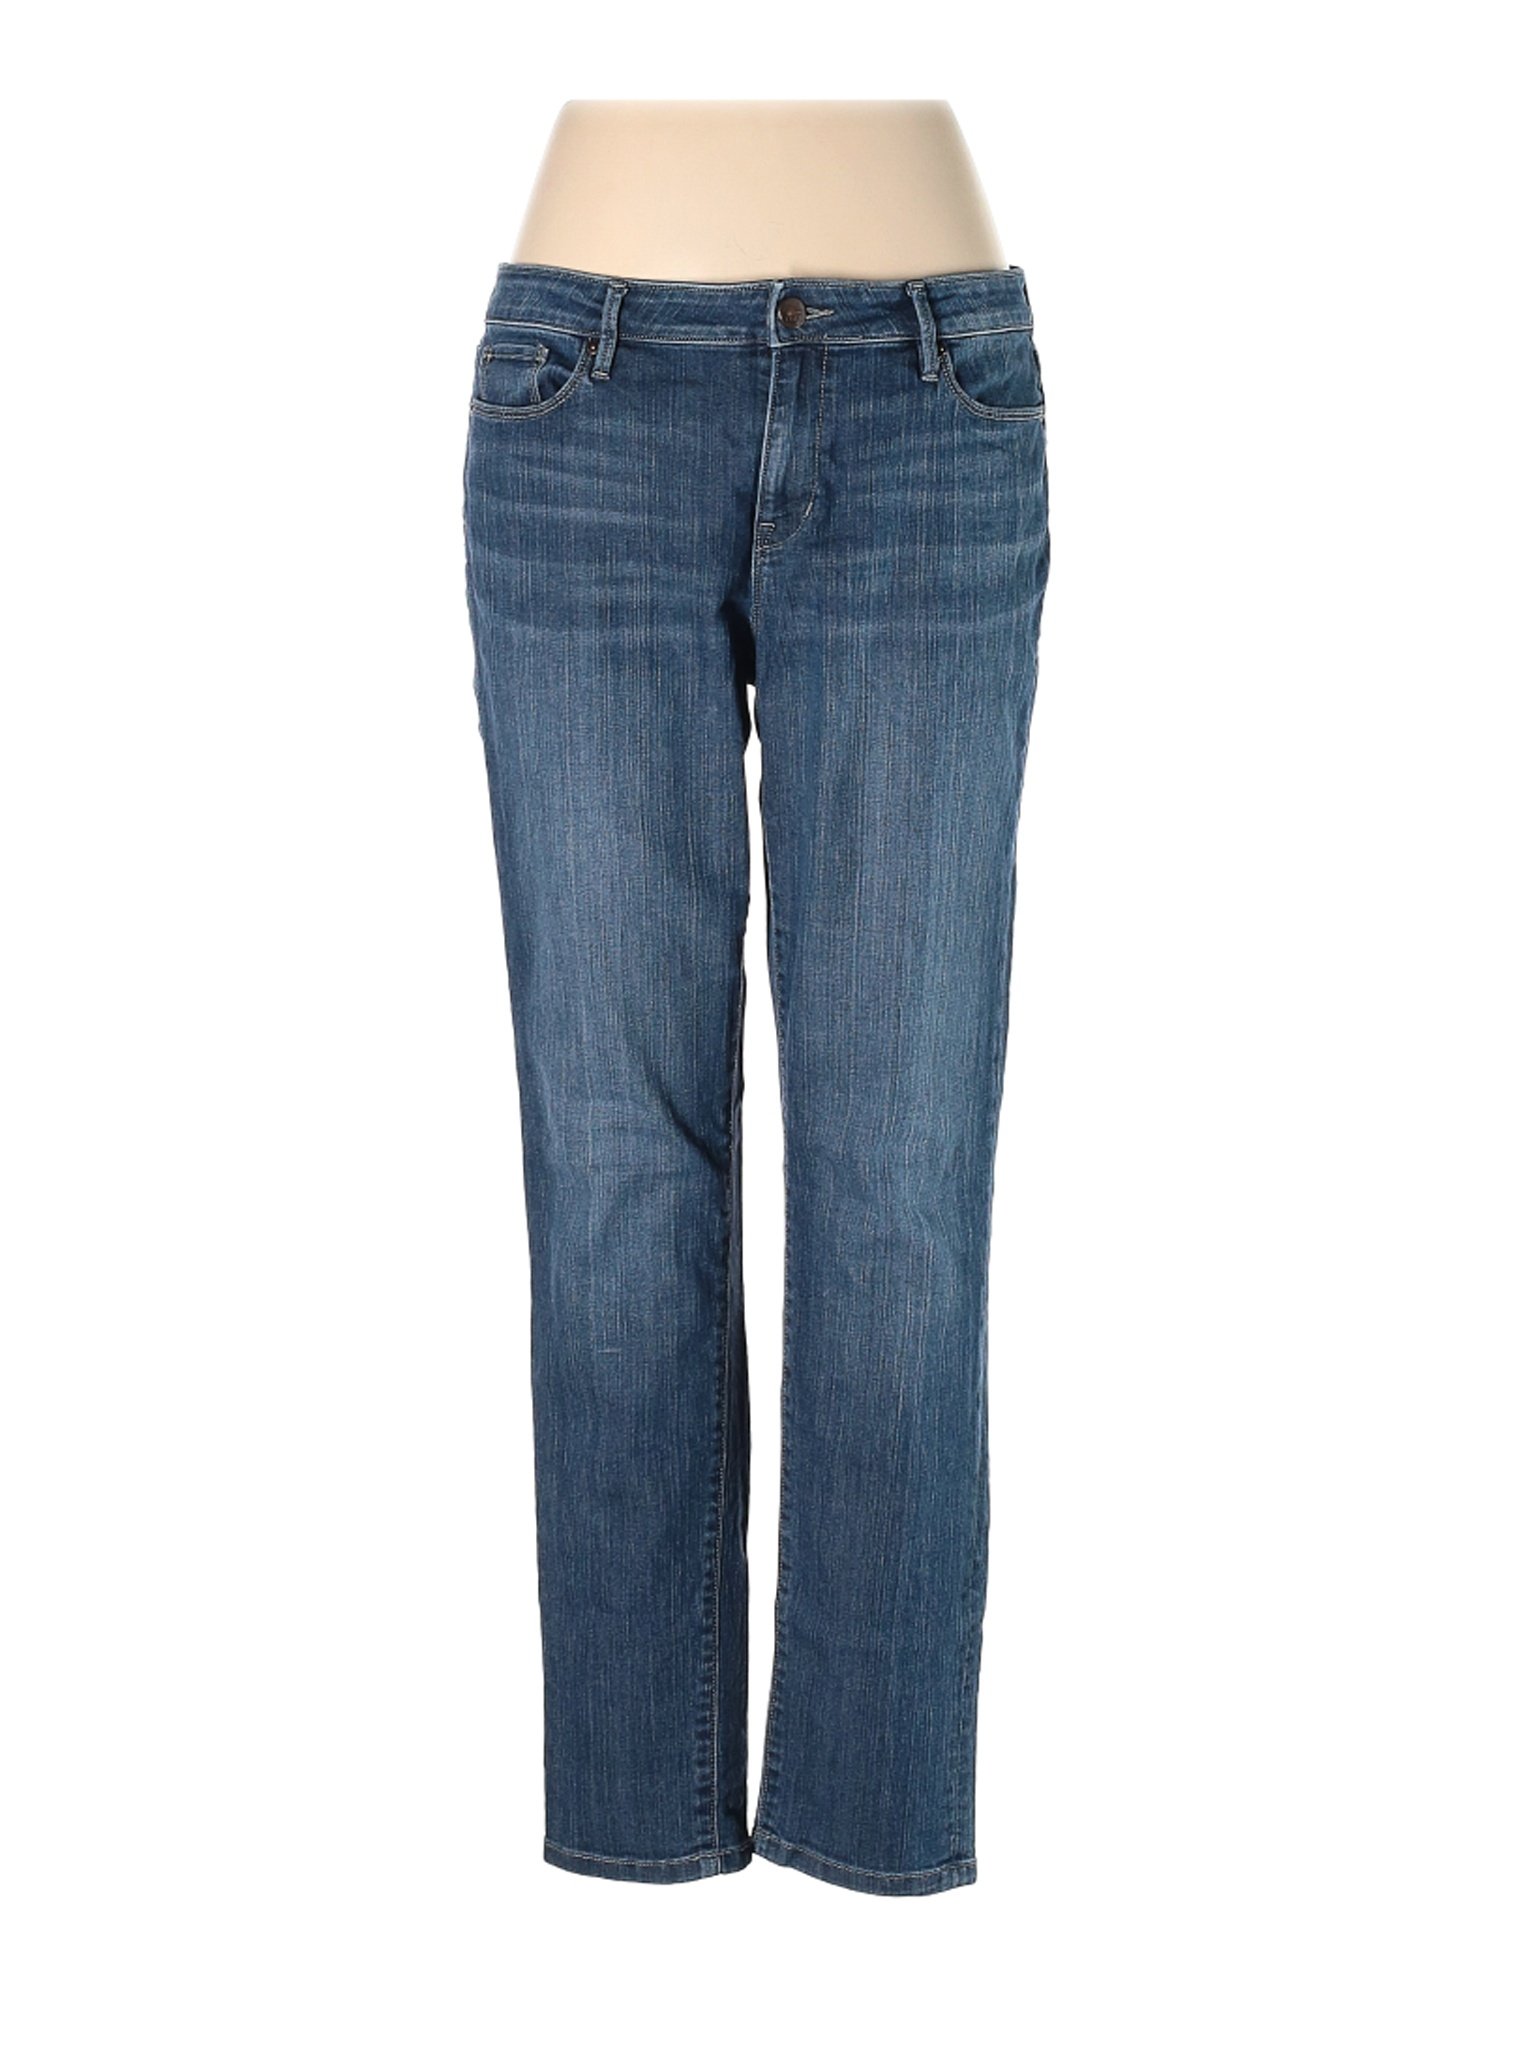 Ann Taylor LOFT Women Blue Jeans 14 | eBay